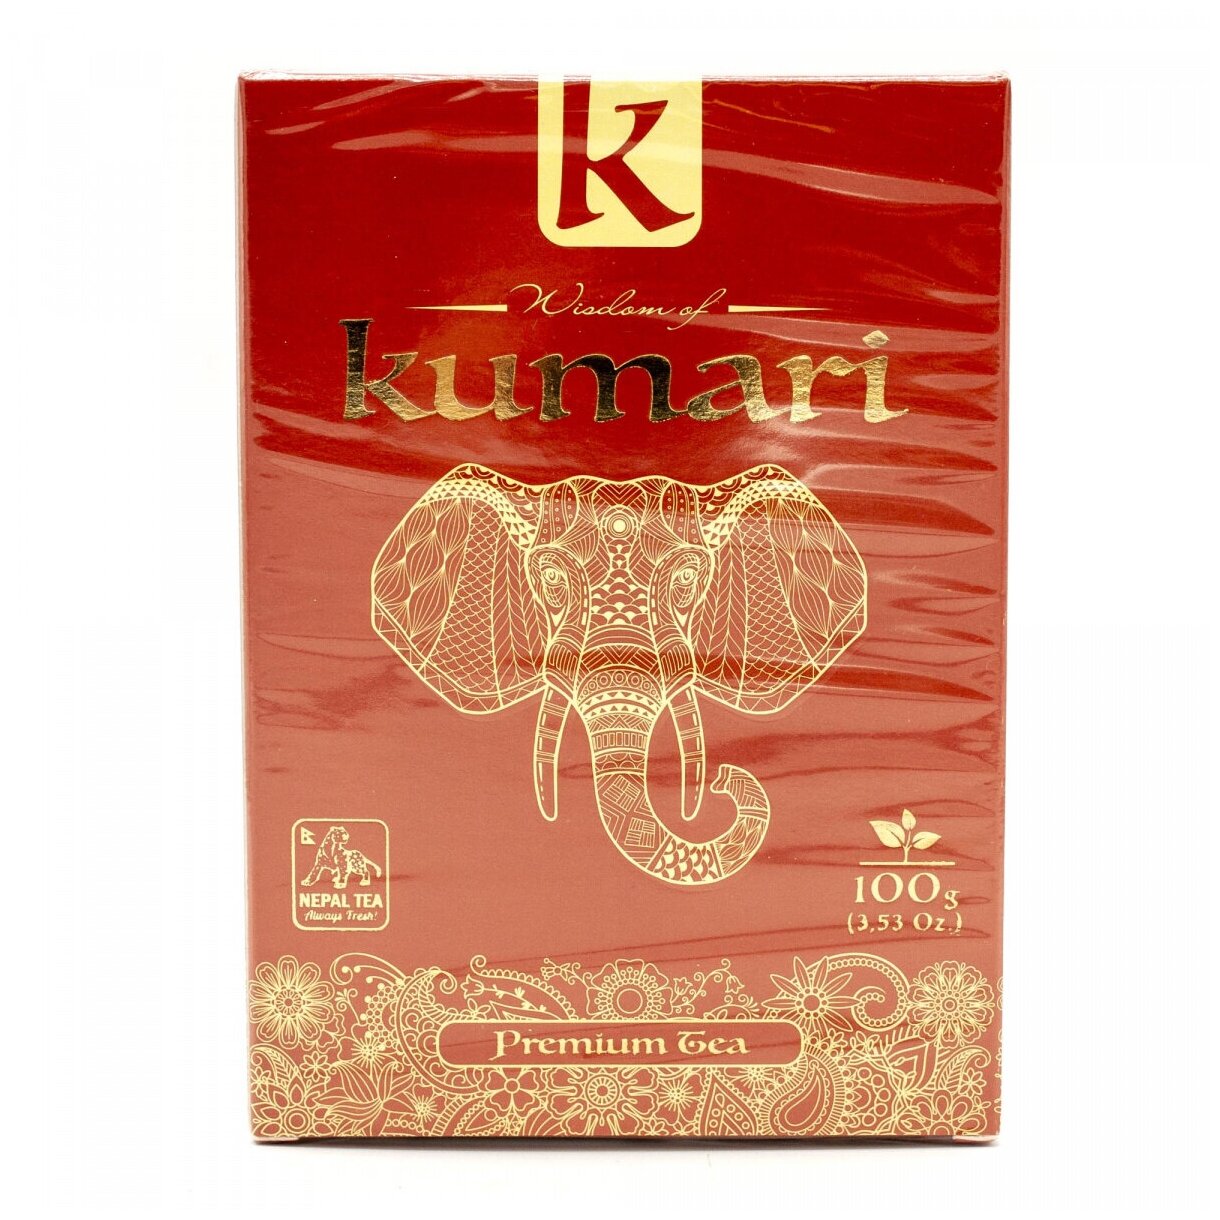 Чай Мудрость Кумари "Королевский" чёрный крупнолистовой OPA 100гр. Индия. в картонной упаковке.